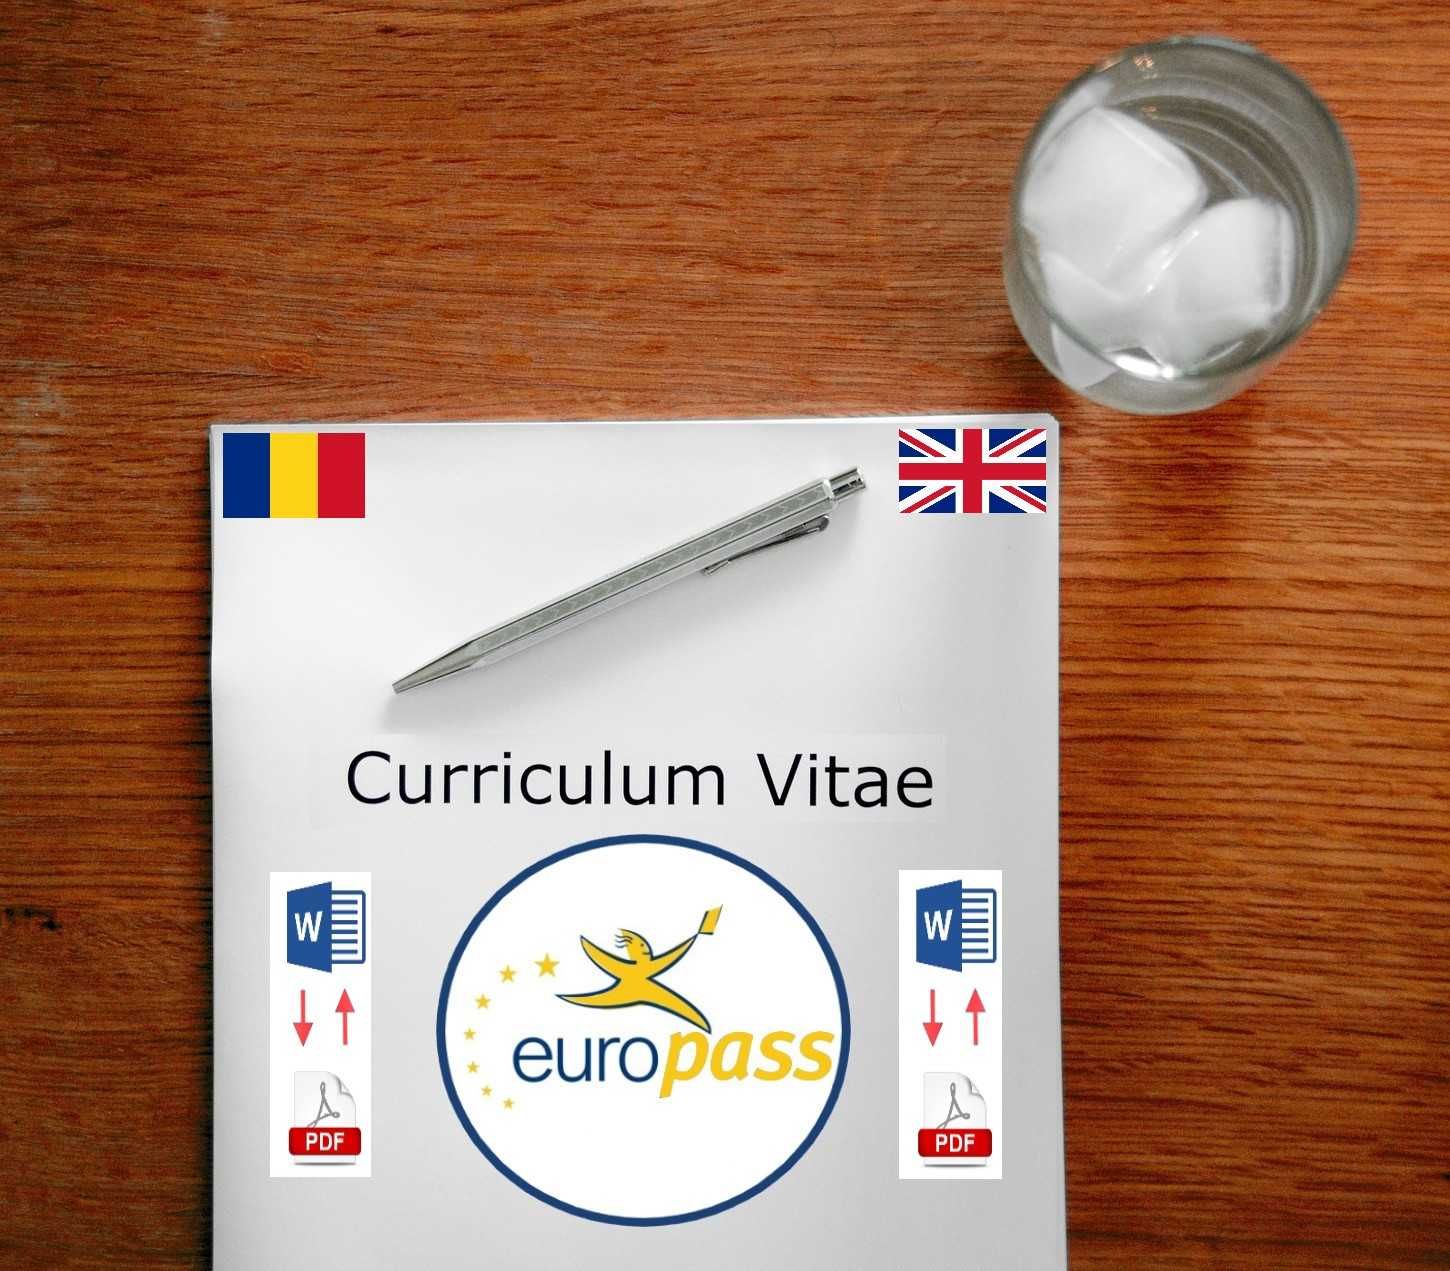 t|Curriculum vitae|CV romana|CV engleza|CV|CV Profesional|CV Europass|